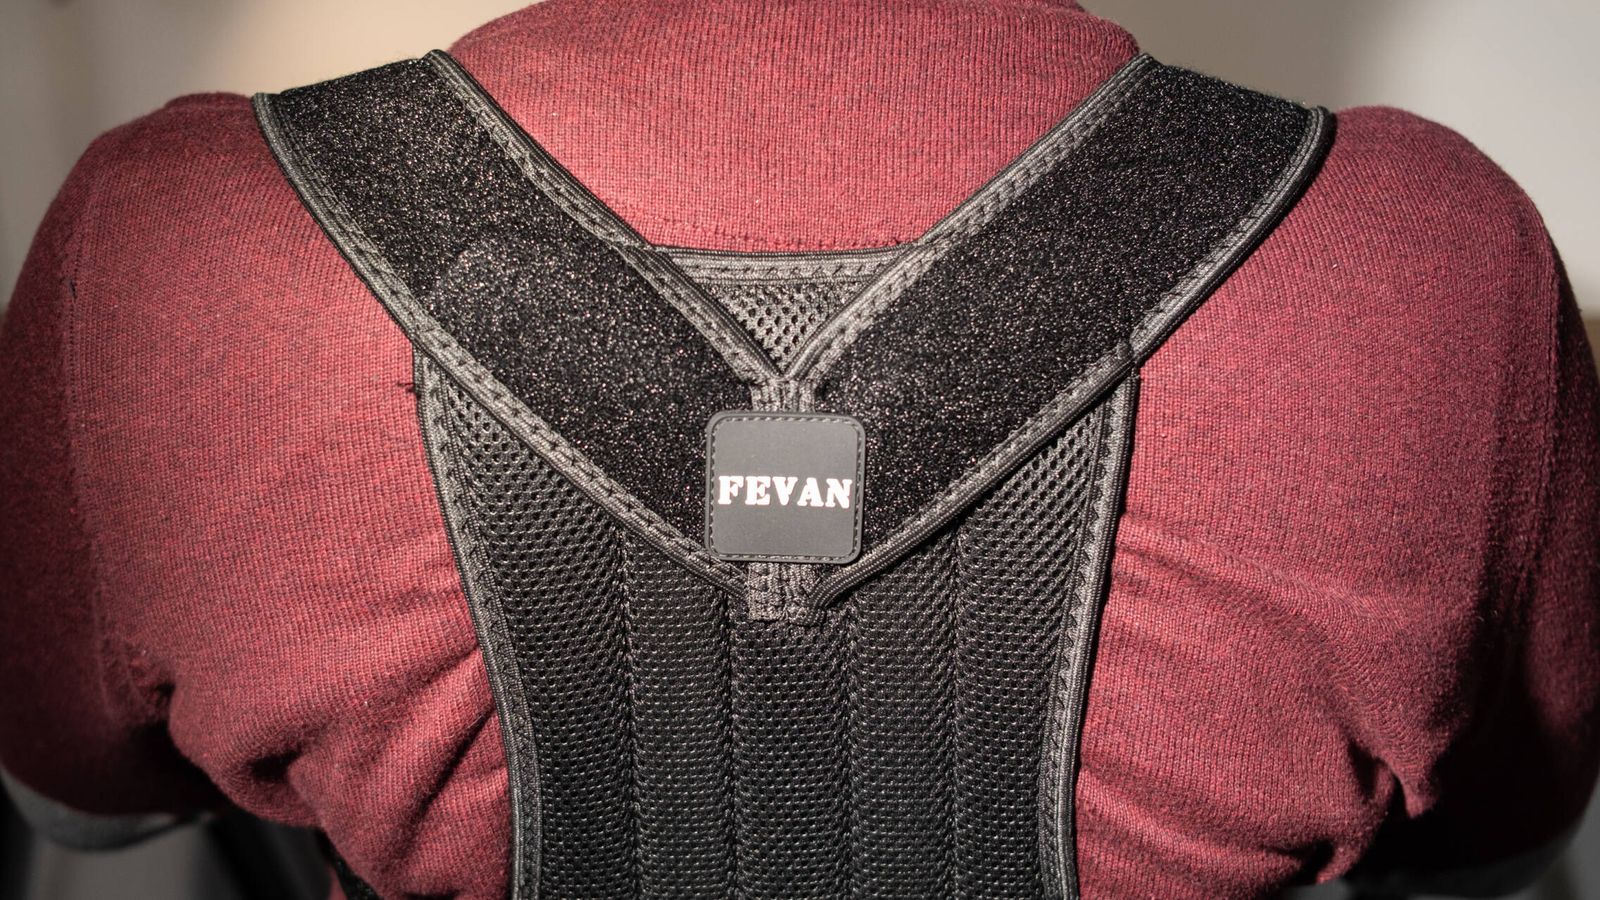 Nos ponemos un chaleco postural de la marca Fevan | Foto: Sergio Beleña